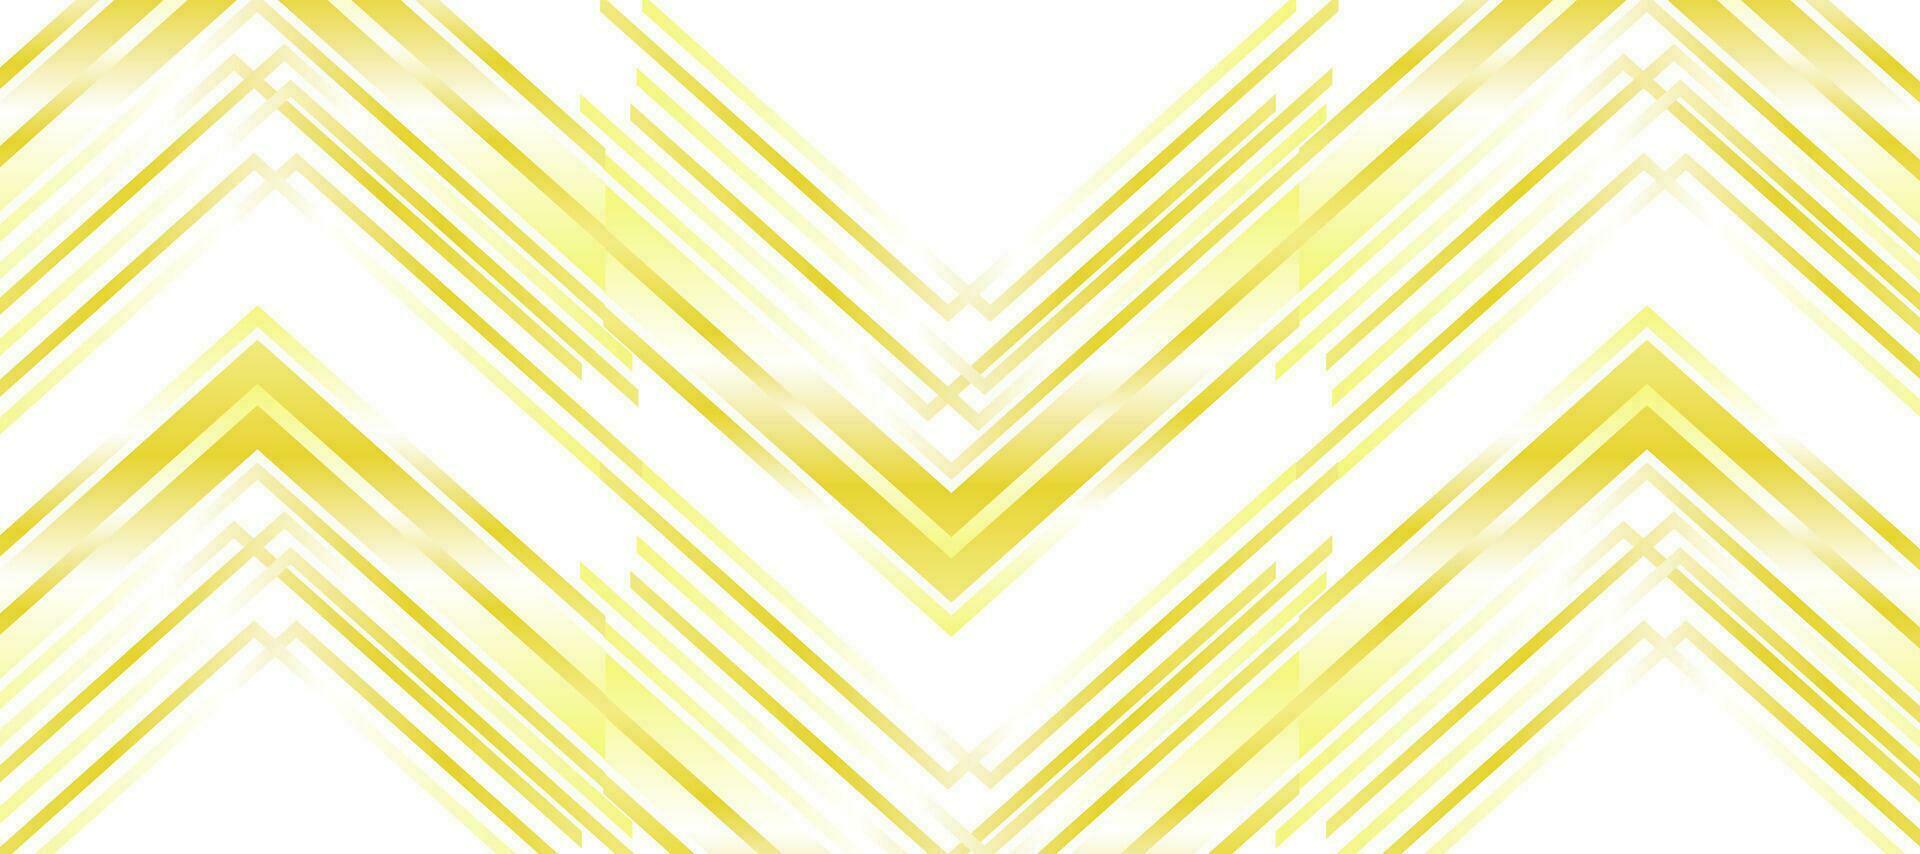 Futuristic Yellow Chevron gradient background Wallpaper vector